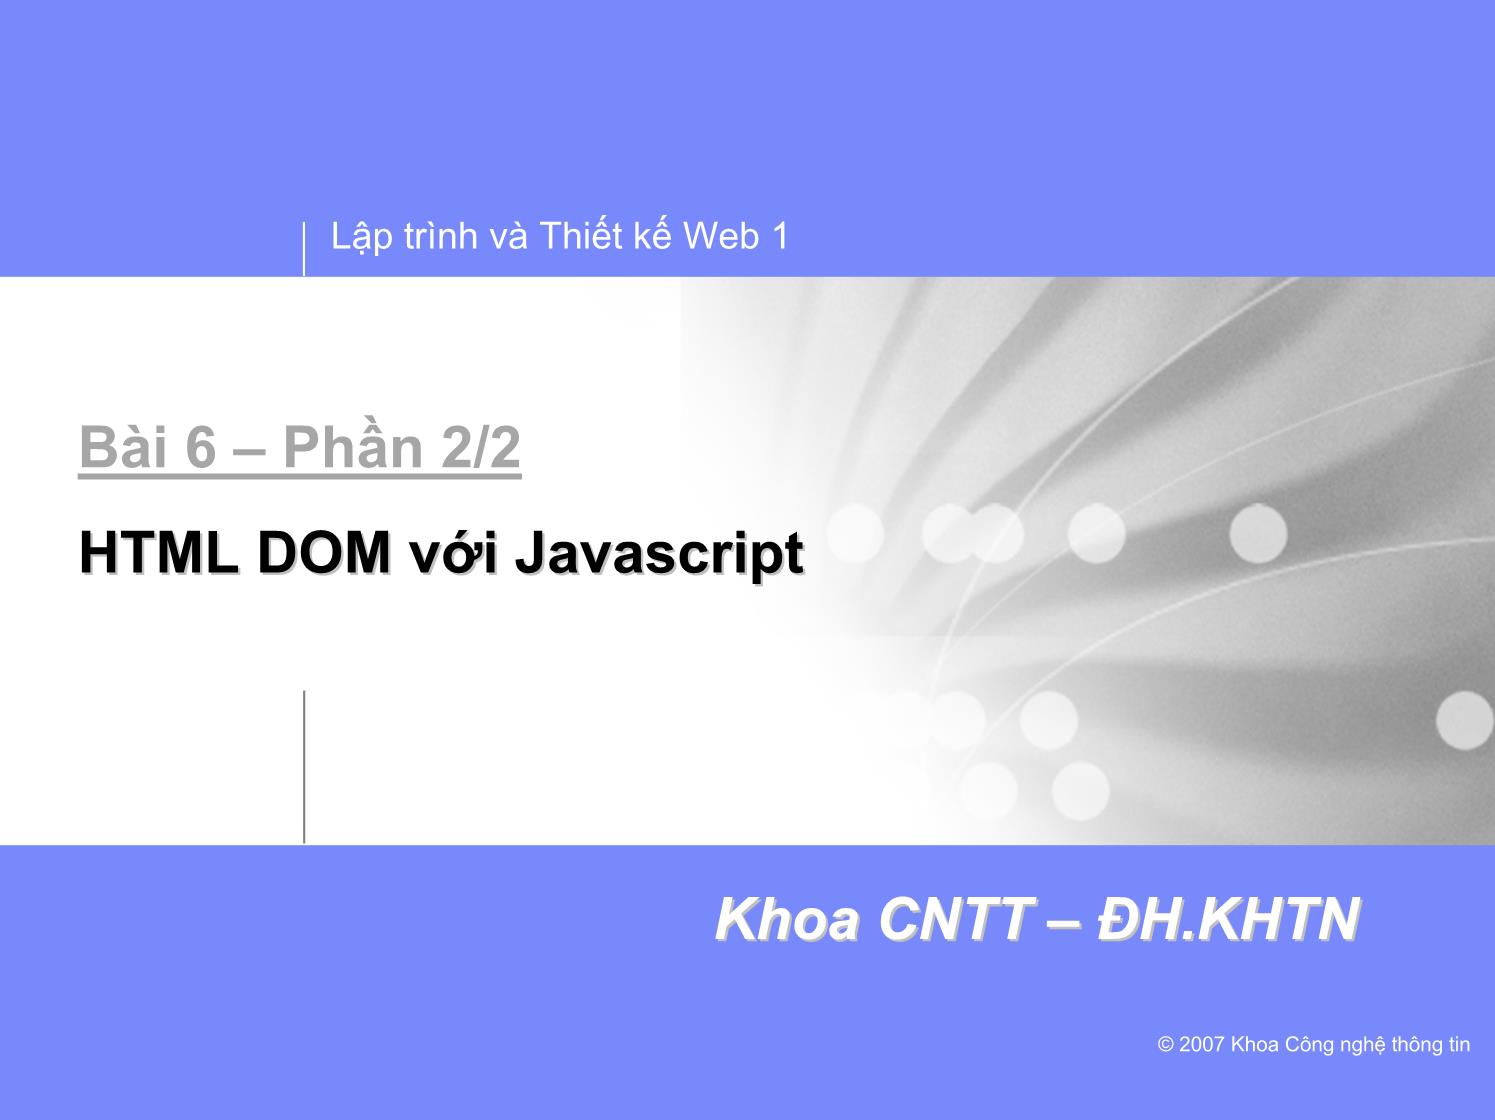 Lập trình và thiết kế Web 1 - Bài 6 - Phần 2/2: HTML DOM với JavaScript trang 1